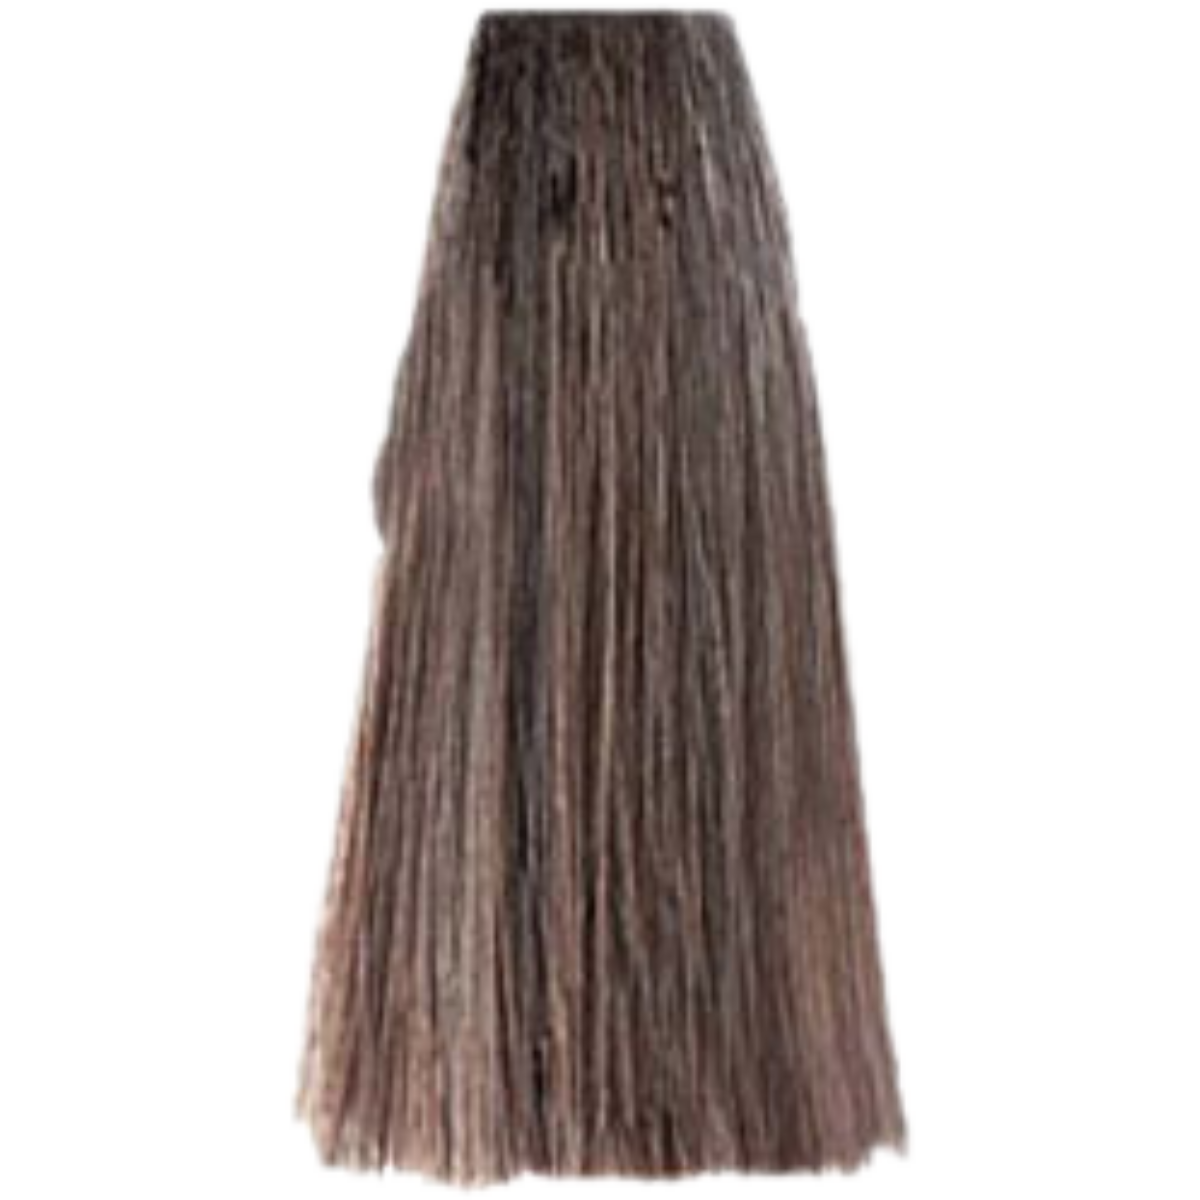 צבע שיער בסיס NATURALS BLONDE 7.0 פארמויטה FarmaVita צבע לשיער 100 גרם